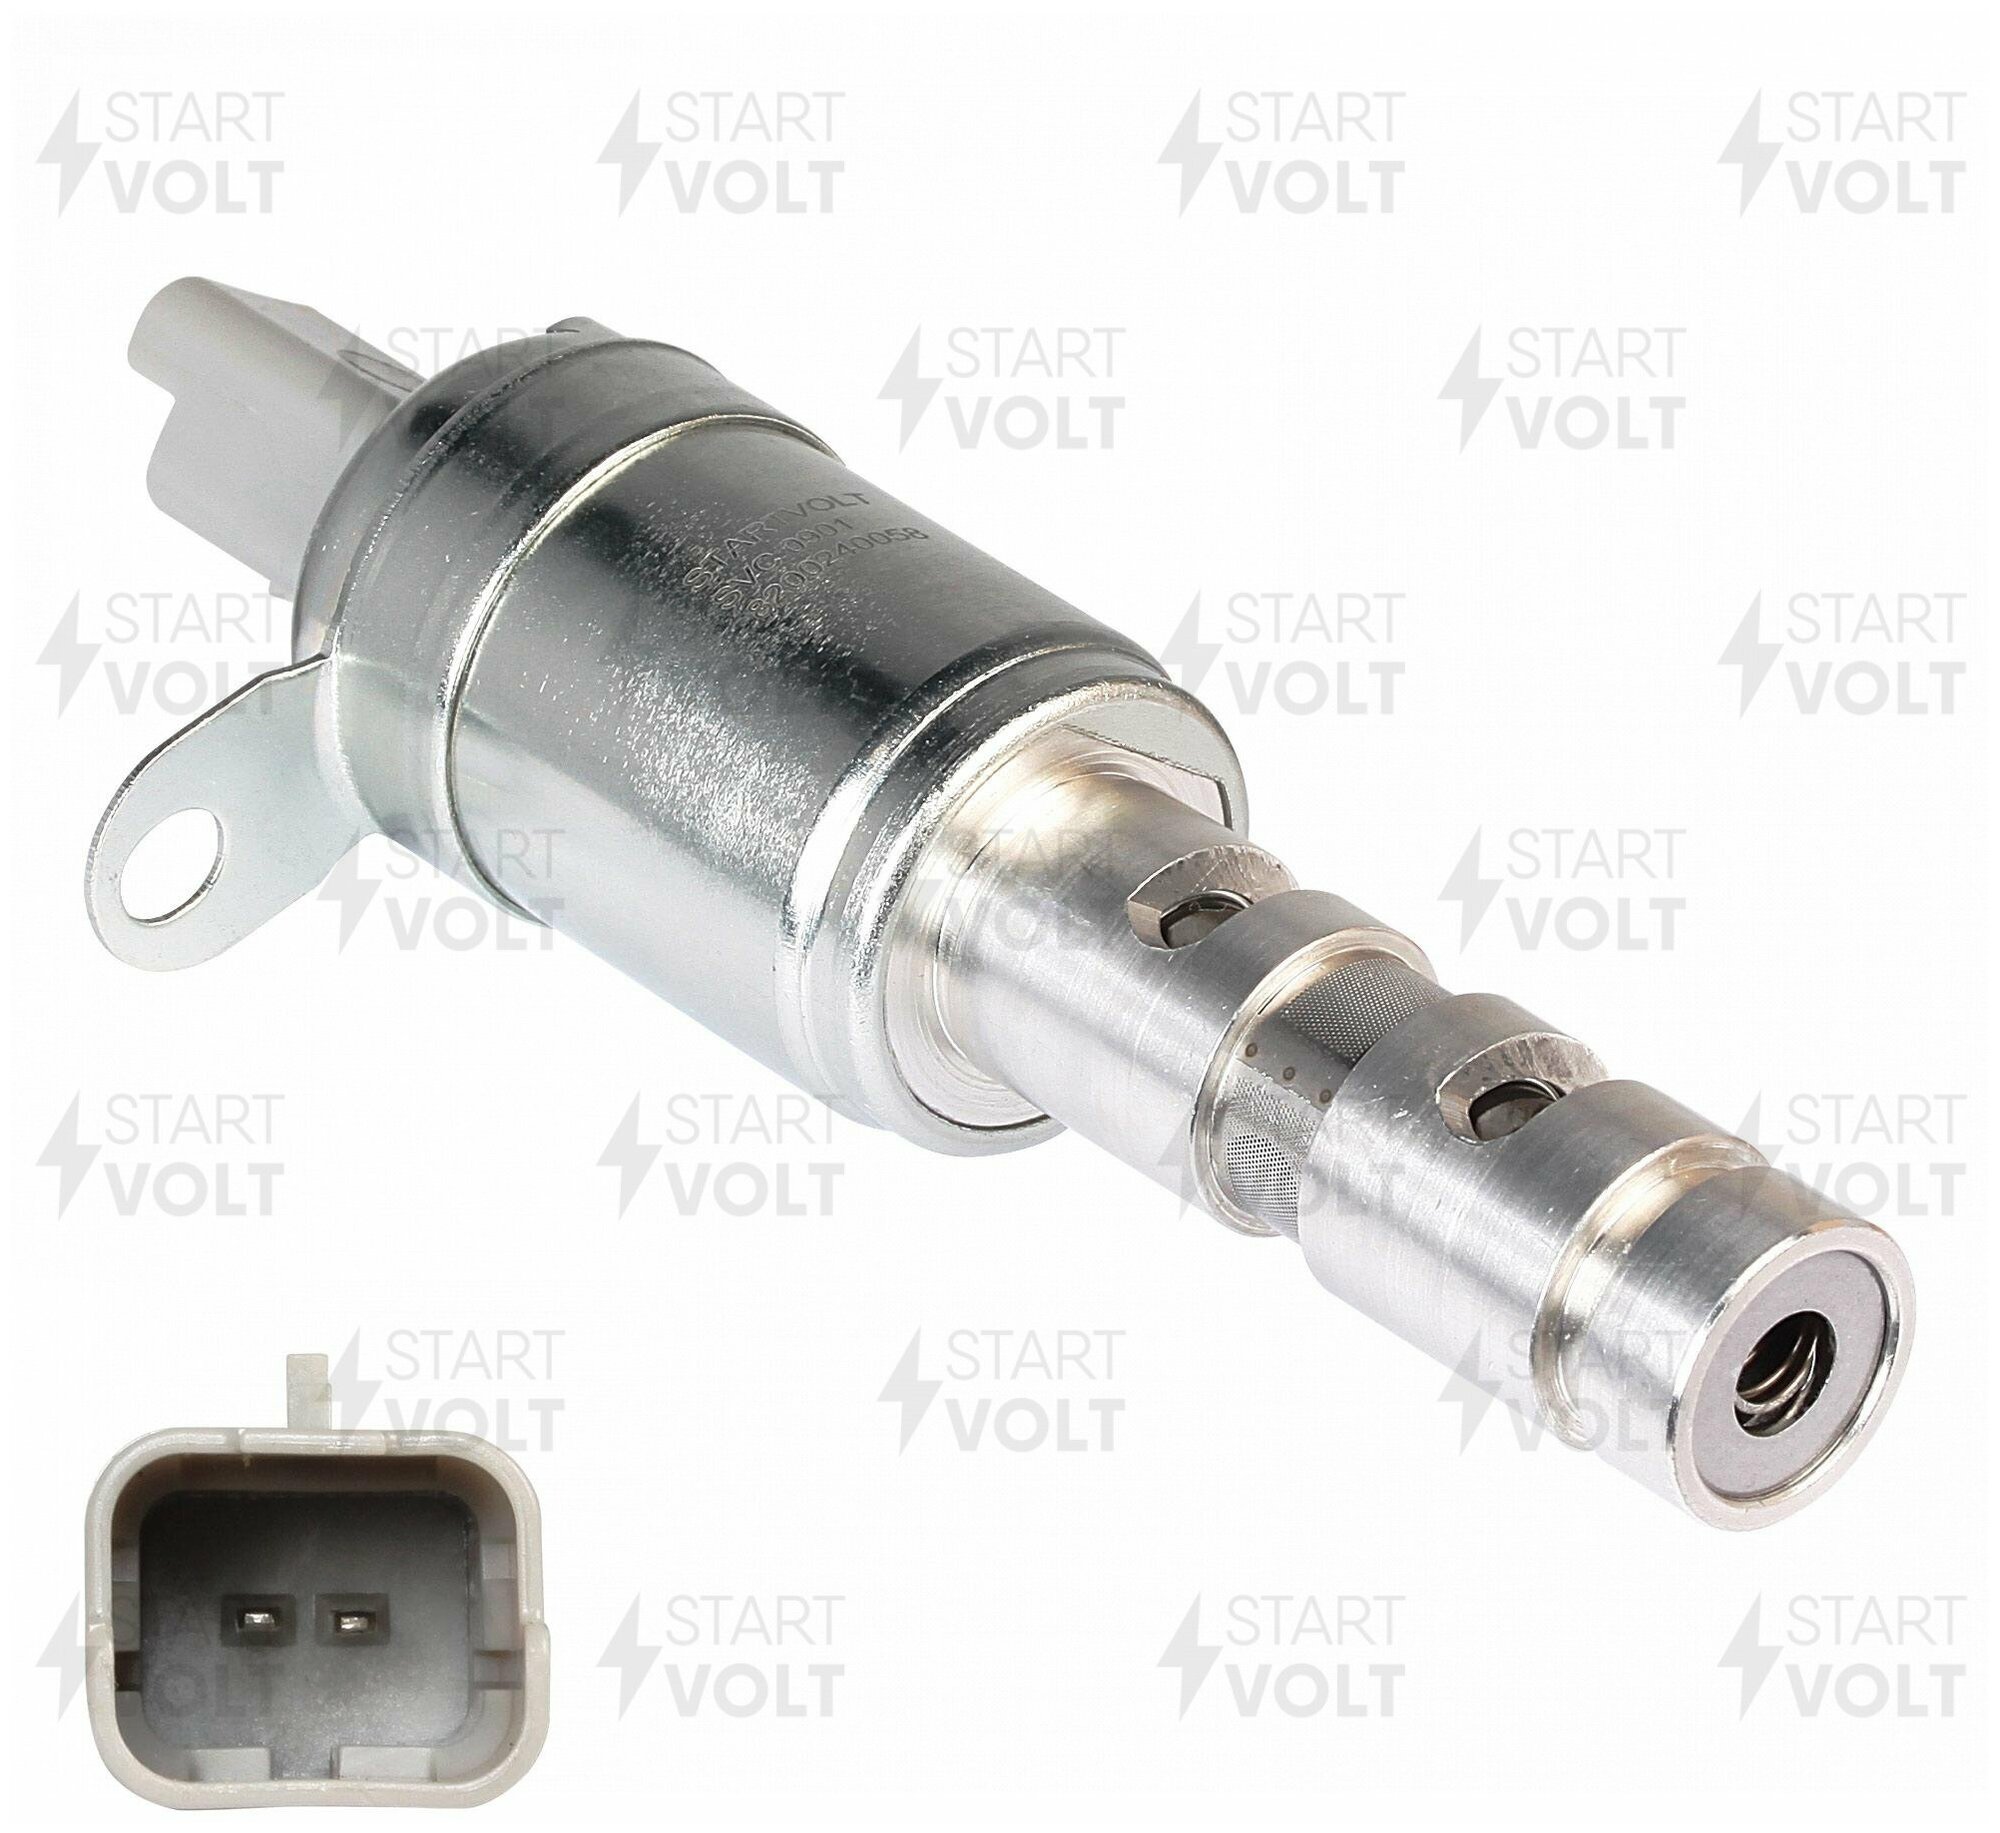 Клапан электромагнитный регулировки фаз ГРМ для автомобилей Renault Megane II (02-) K4M 1.6i SVC 0901 StartVolt